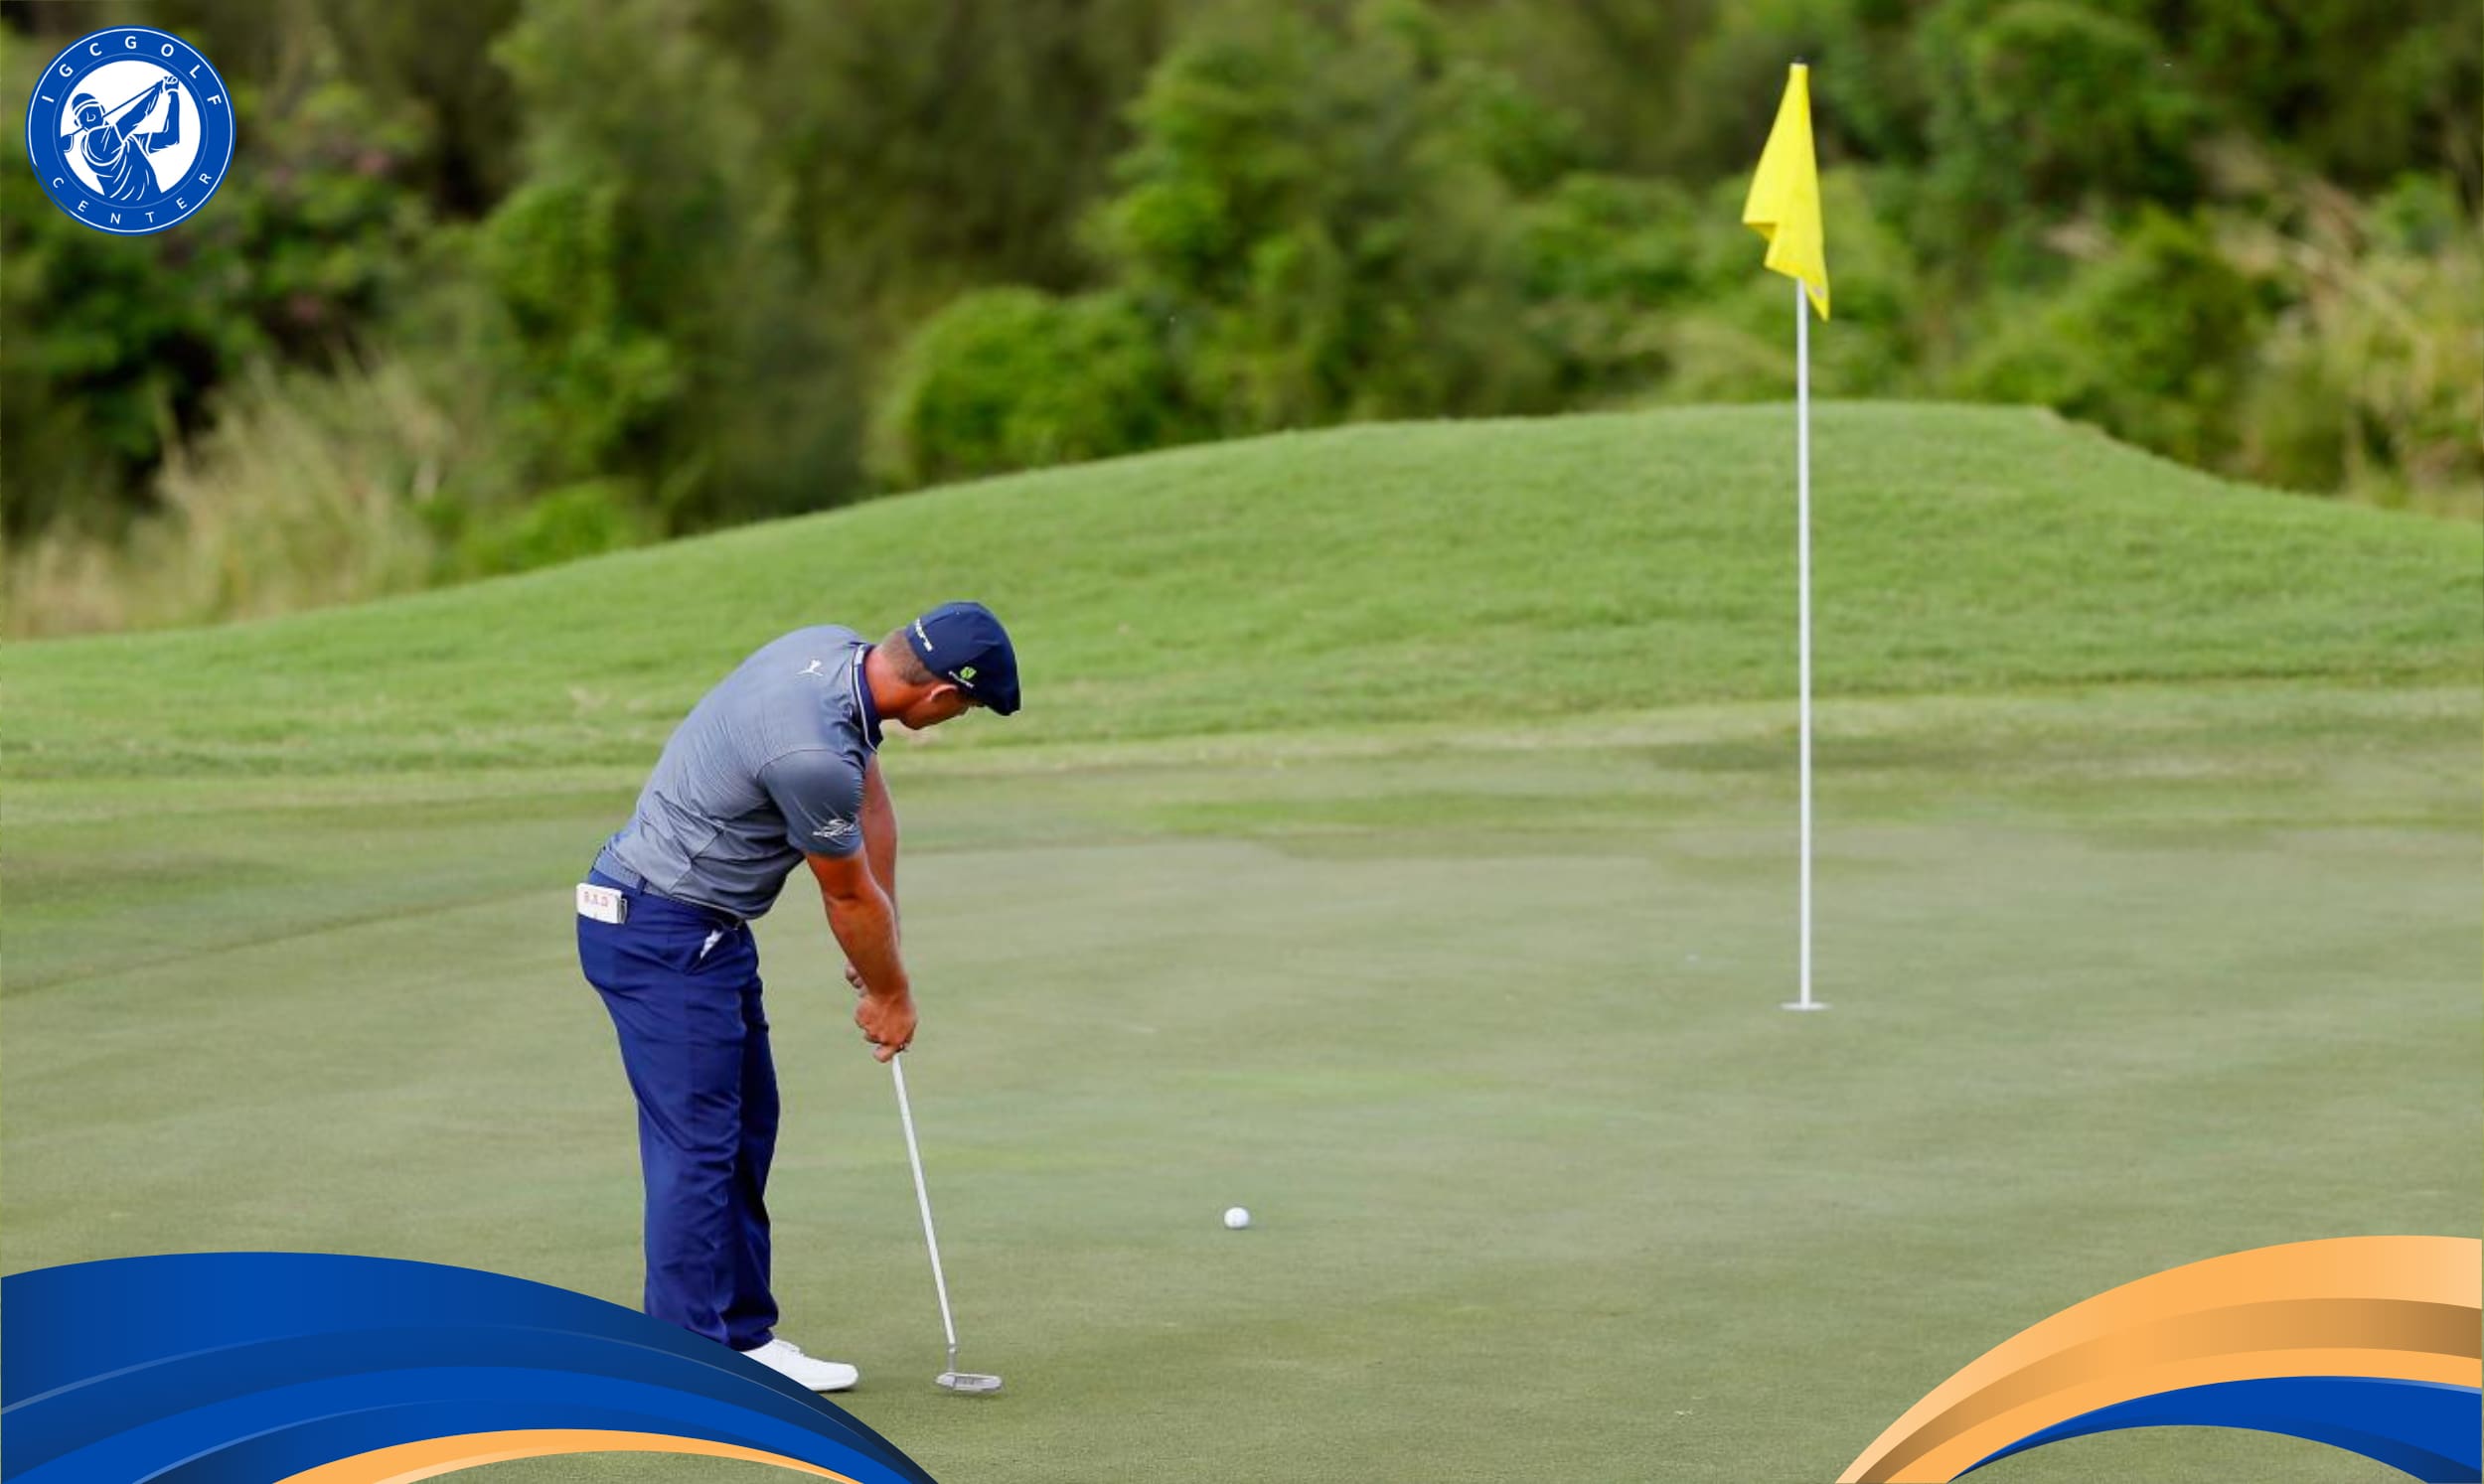 Luật golf trên green mới cho phép đánh trúng vào gậy cờ hiệu